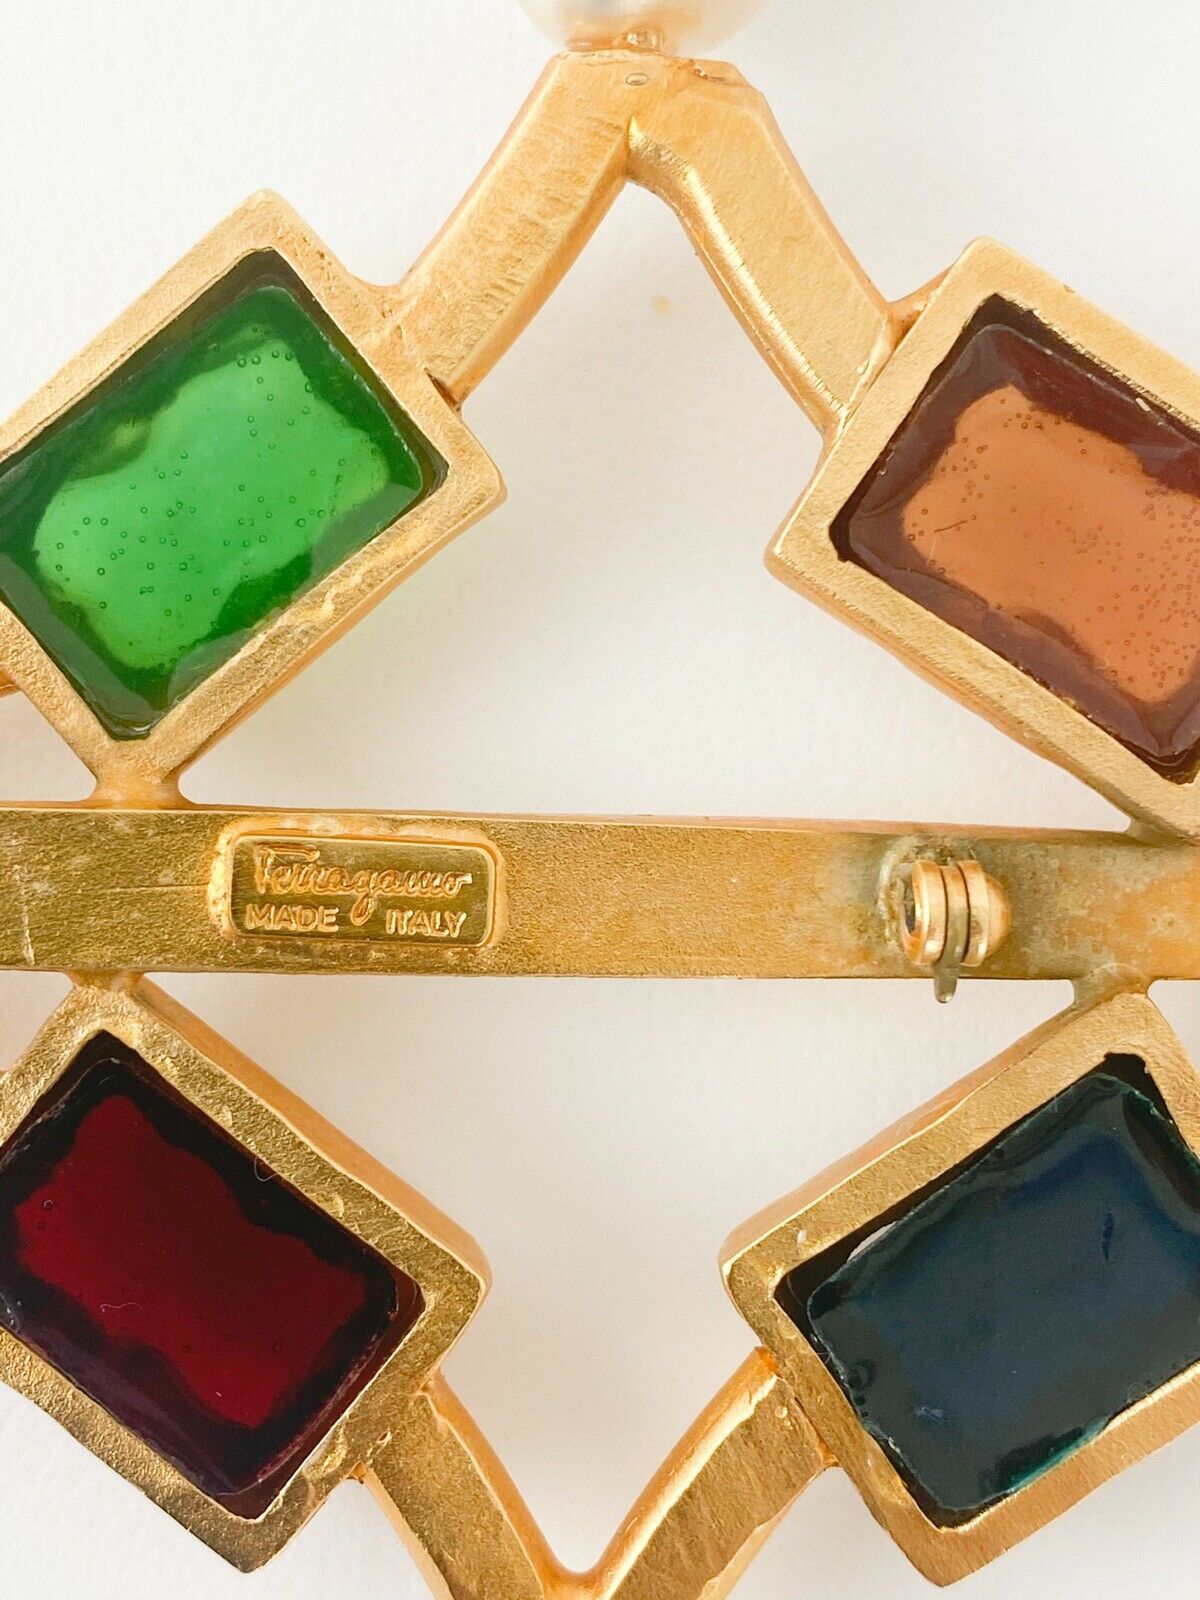 Salvatore Ferragamo Vintage Massive Brooch Pin Made in Italy Multi-Color